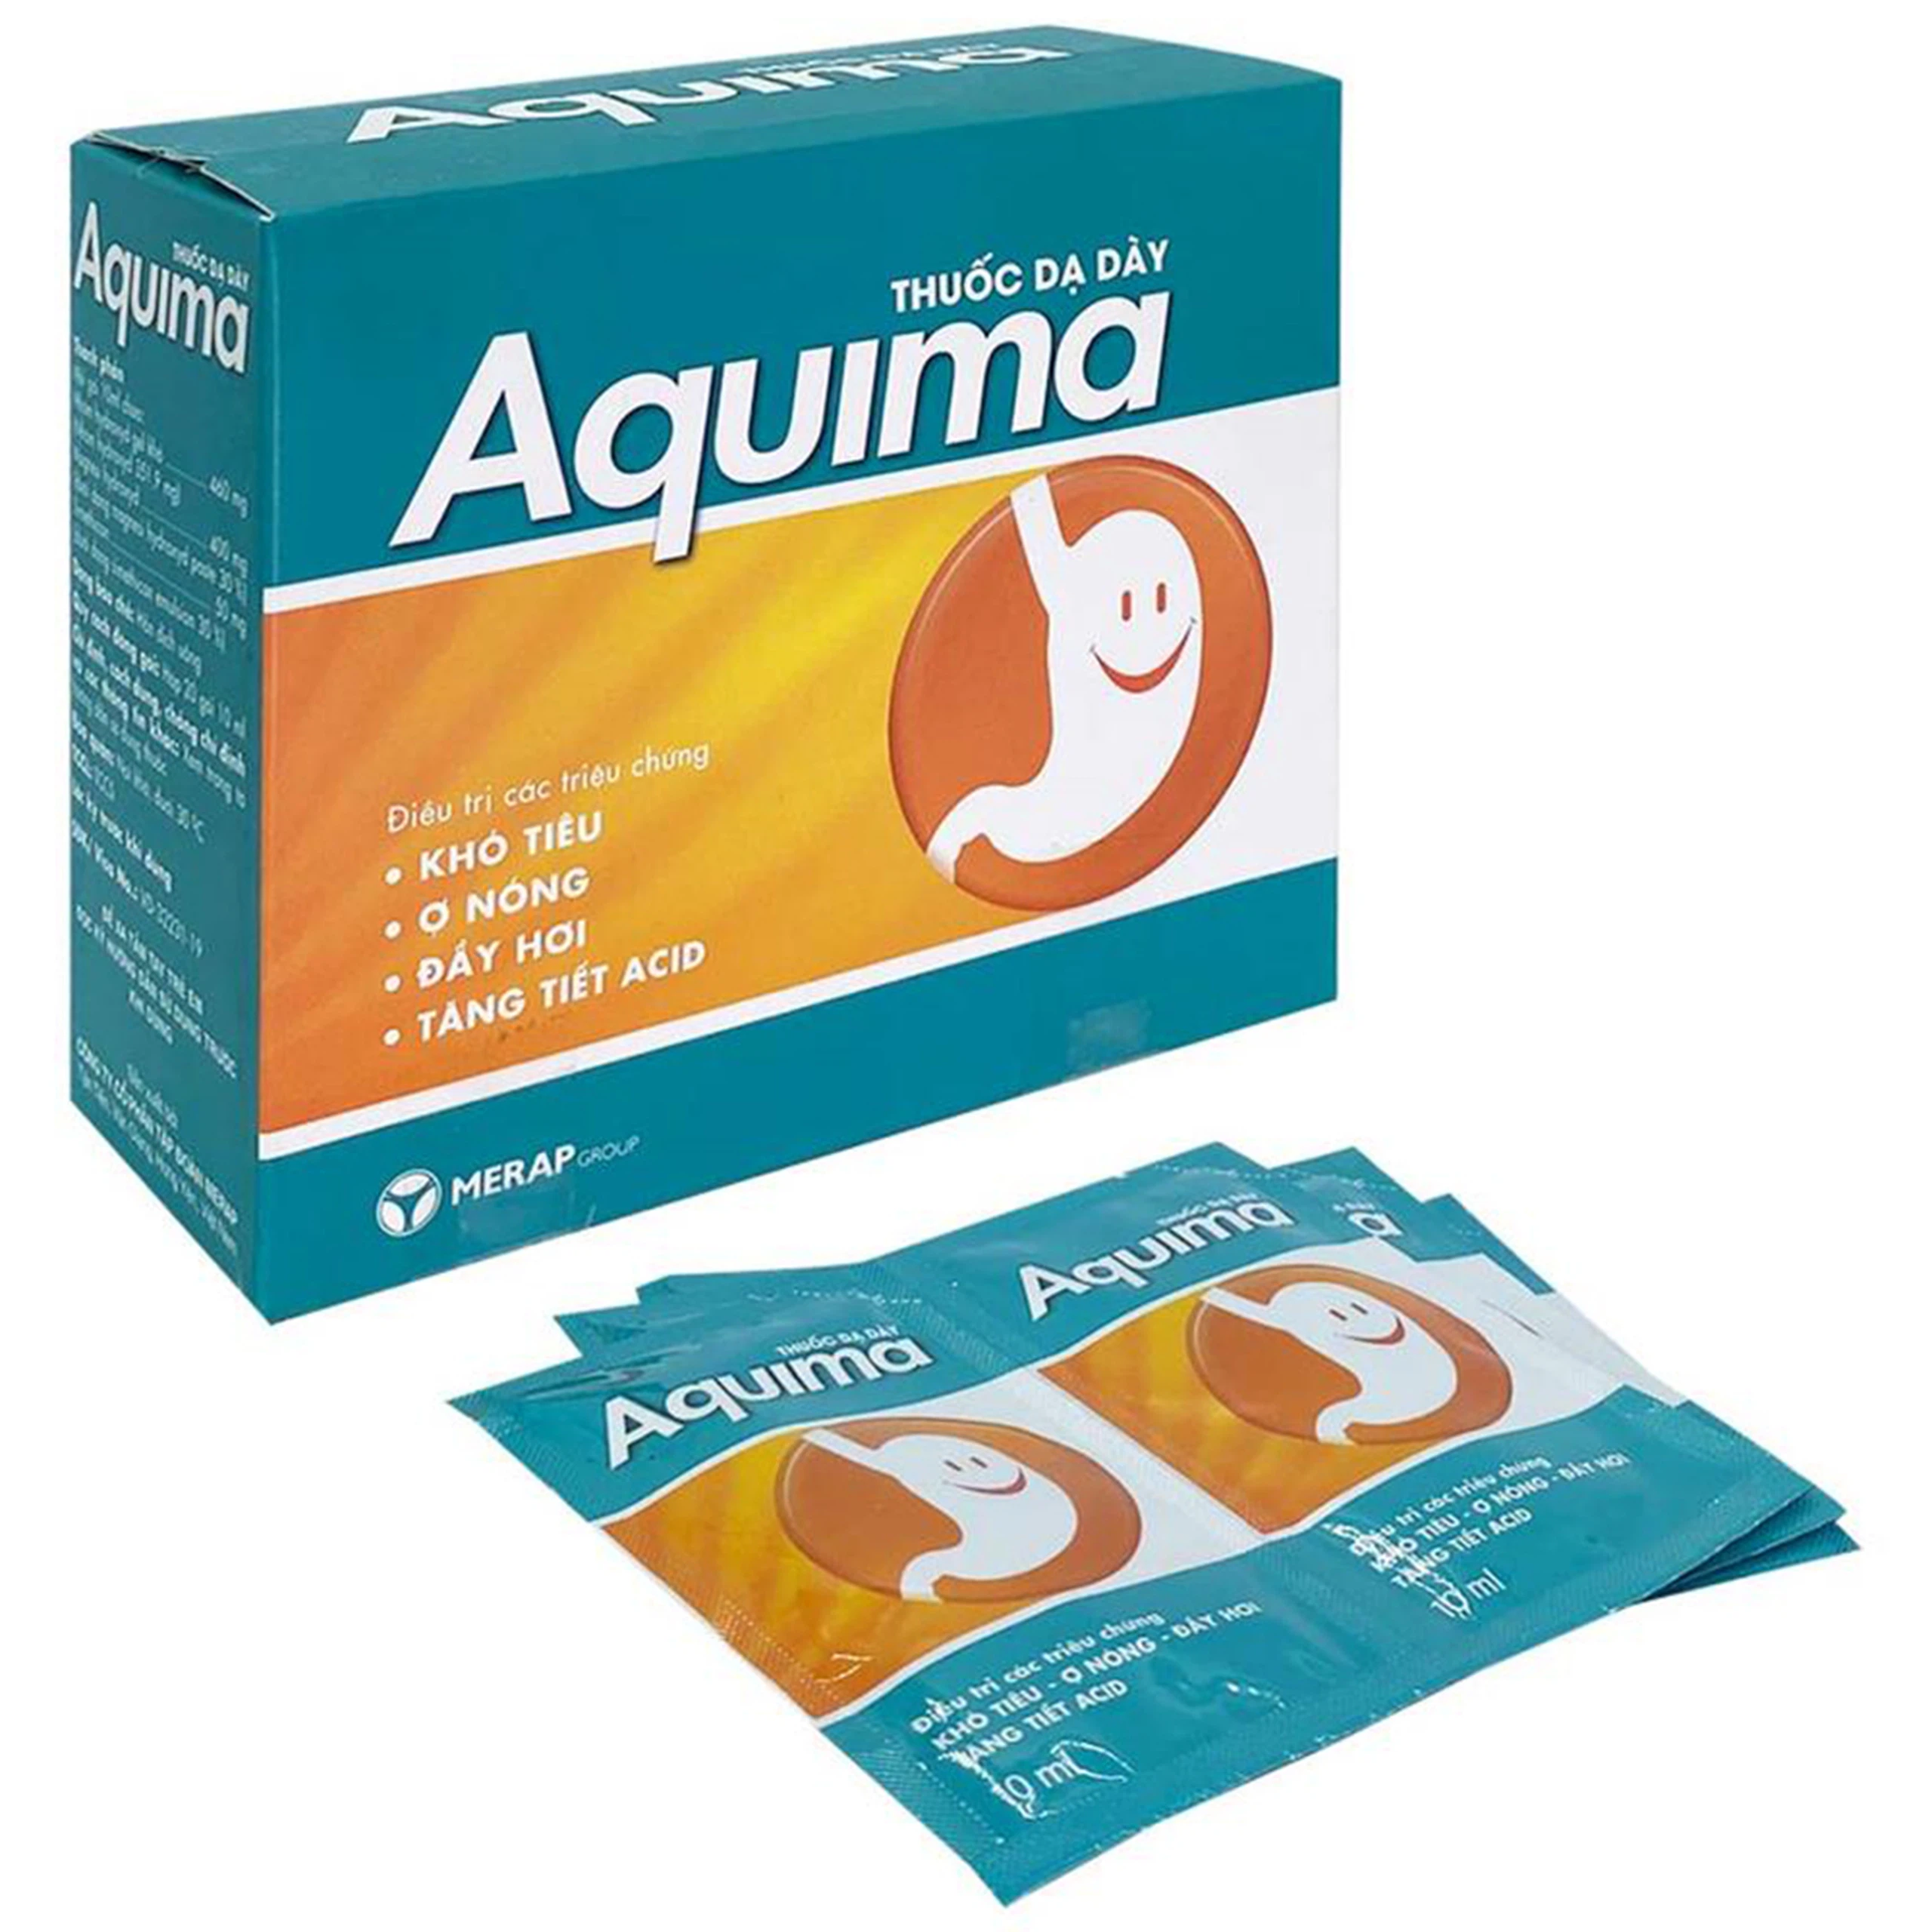 Thuốc Aquima Merap hỗ trợ điều trị các triệu chứng khó tiêu, ợ nóng, đầy hơi (20 gói x 10ml)